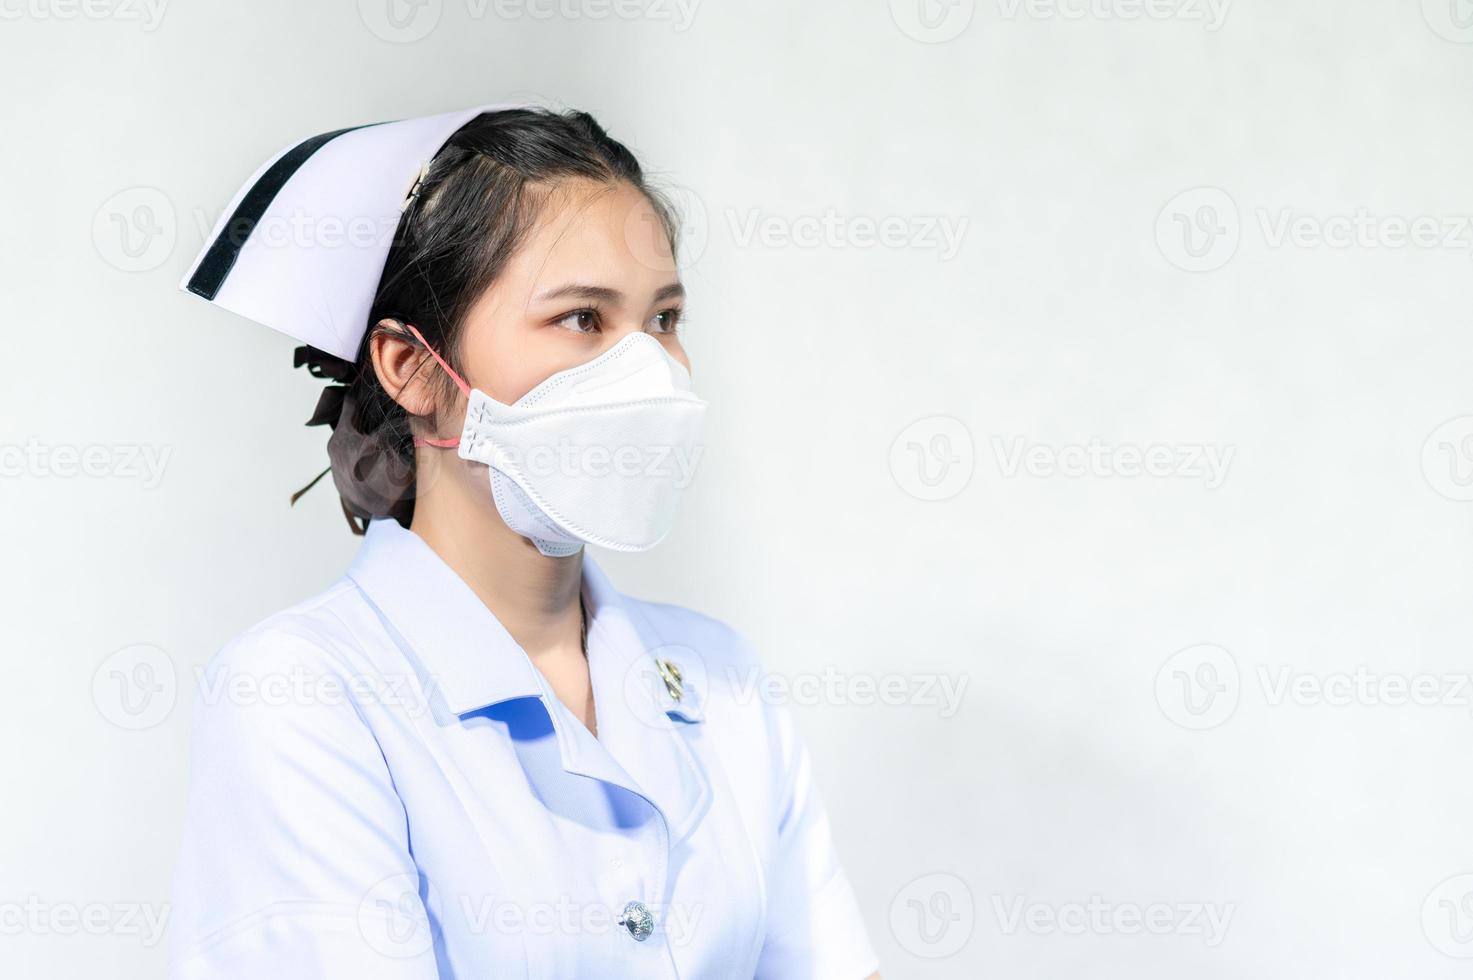 enfermeiras usam máscaras para proteção contra covid do coronavírus 19 foto